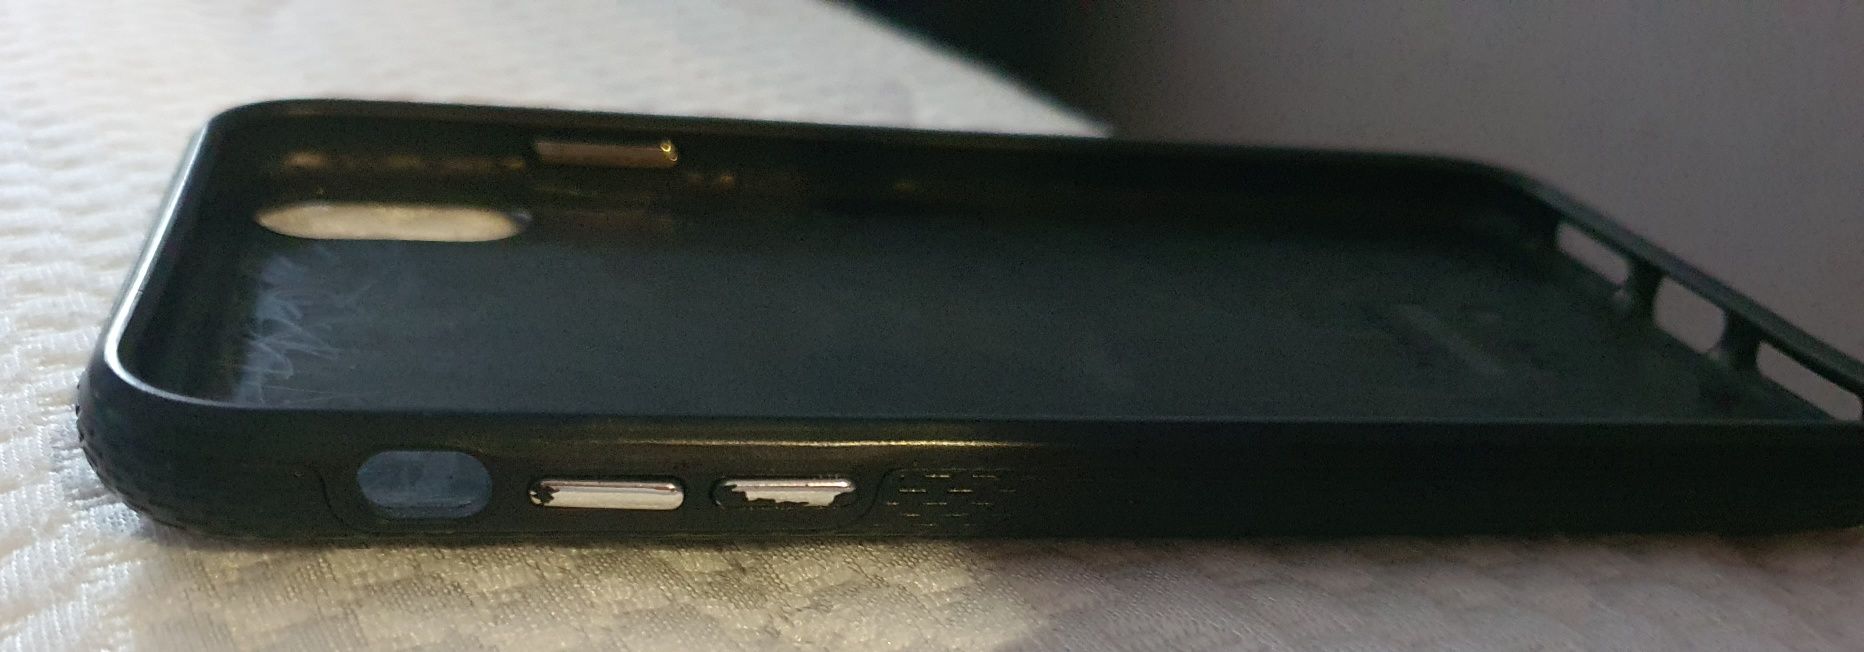 Заден протектор за Iphone Xs Max